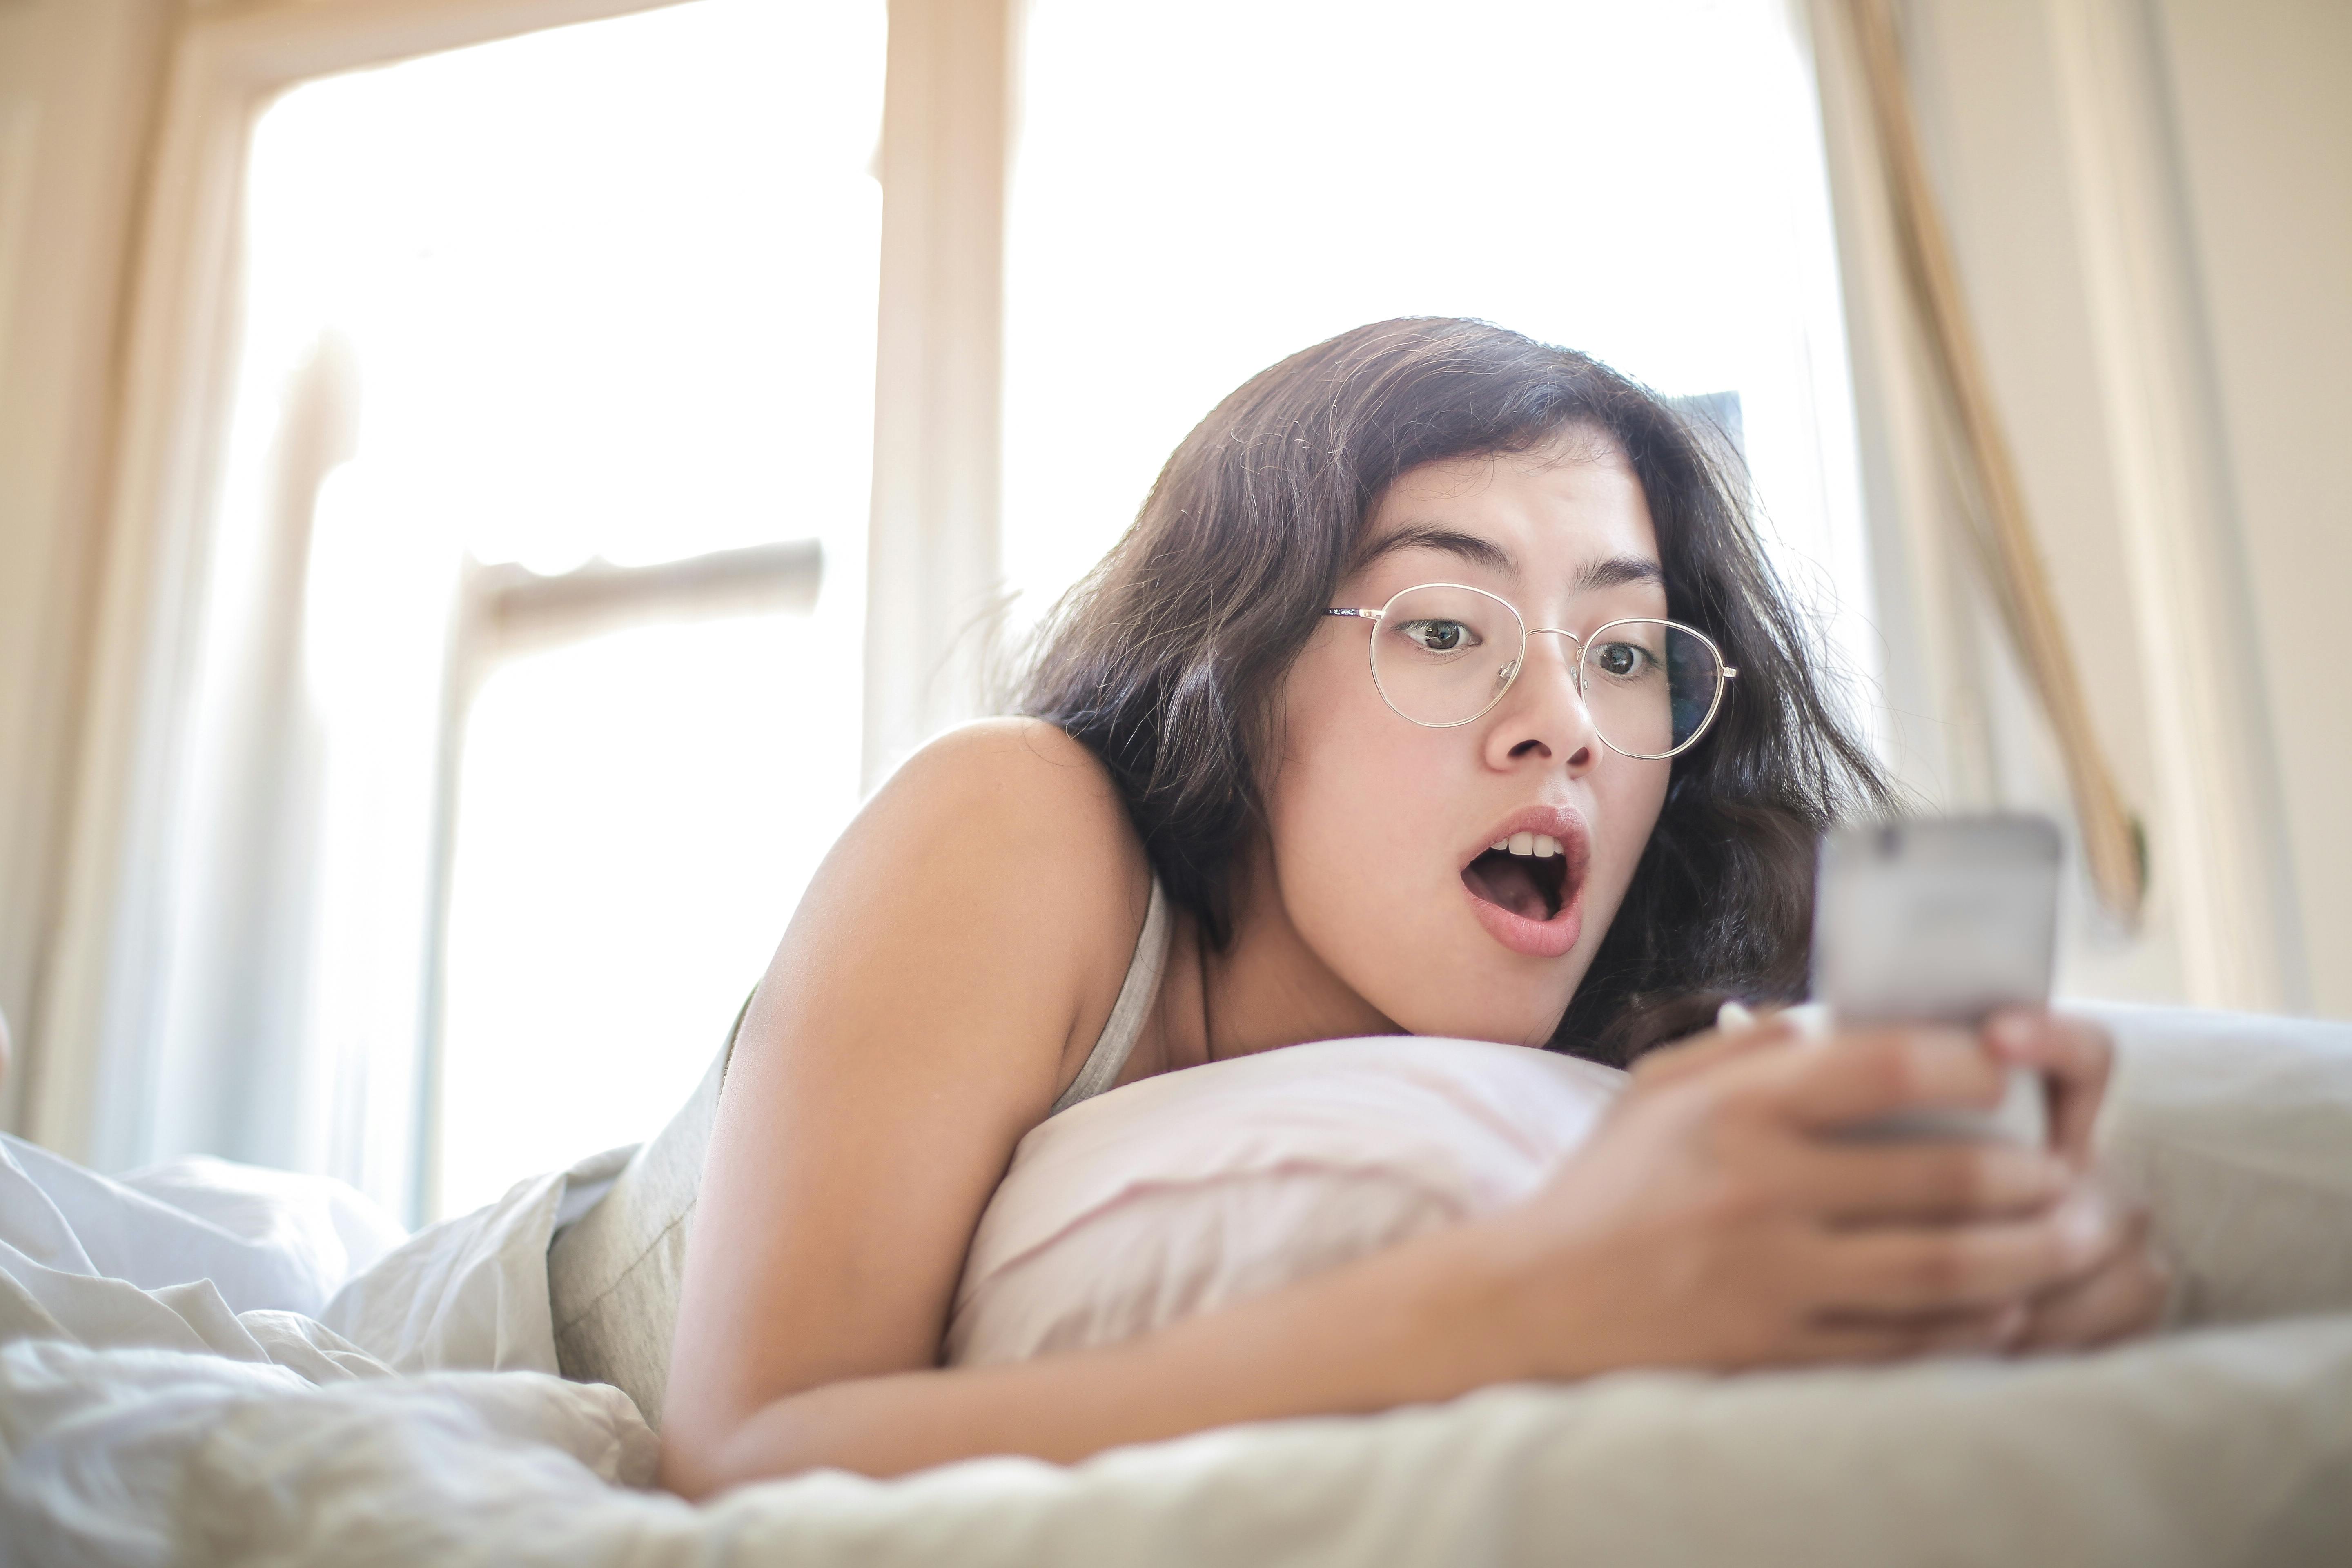 Eine geschockte Frau, die auf einem Bett liegt und ein Telefon hält und darauf schaut | Quelle: Pexels